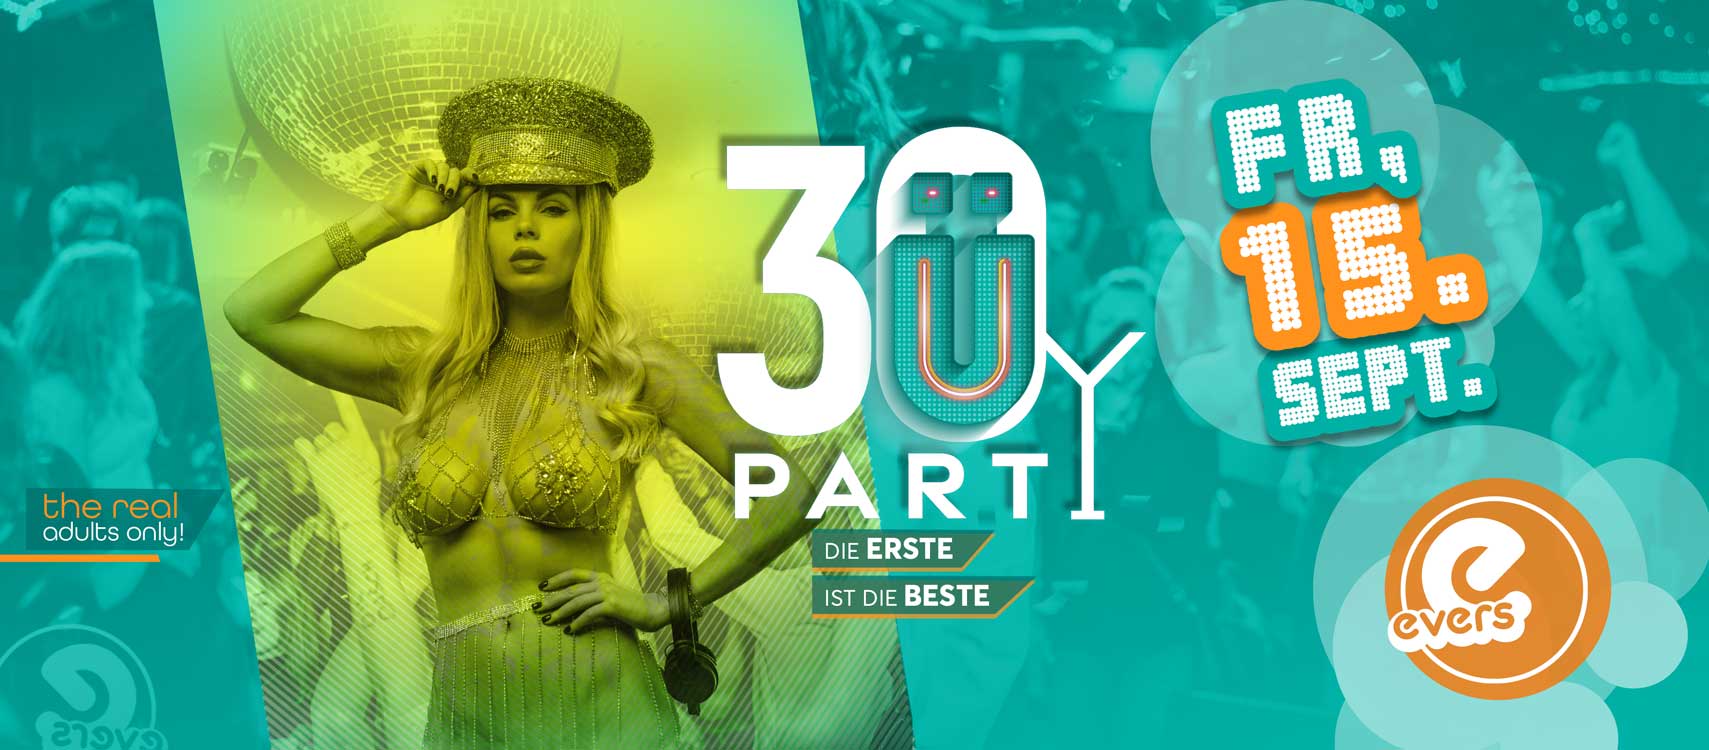 Ü30 Party | die ERSTE ist die BESTE! | FR 15.09.